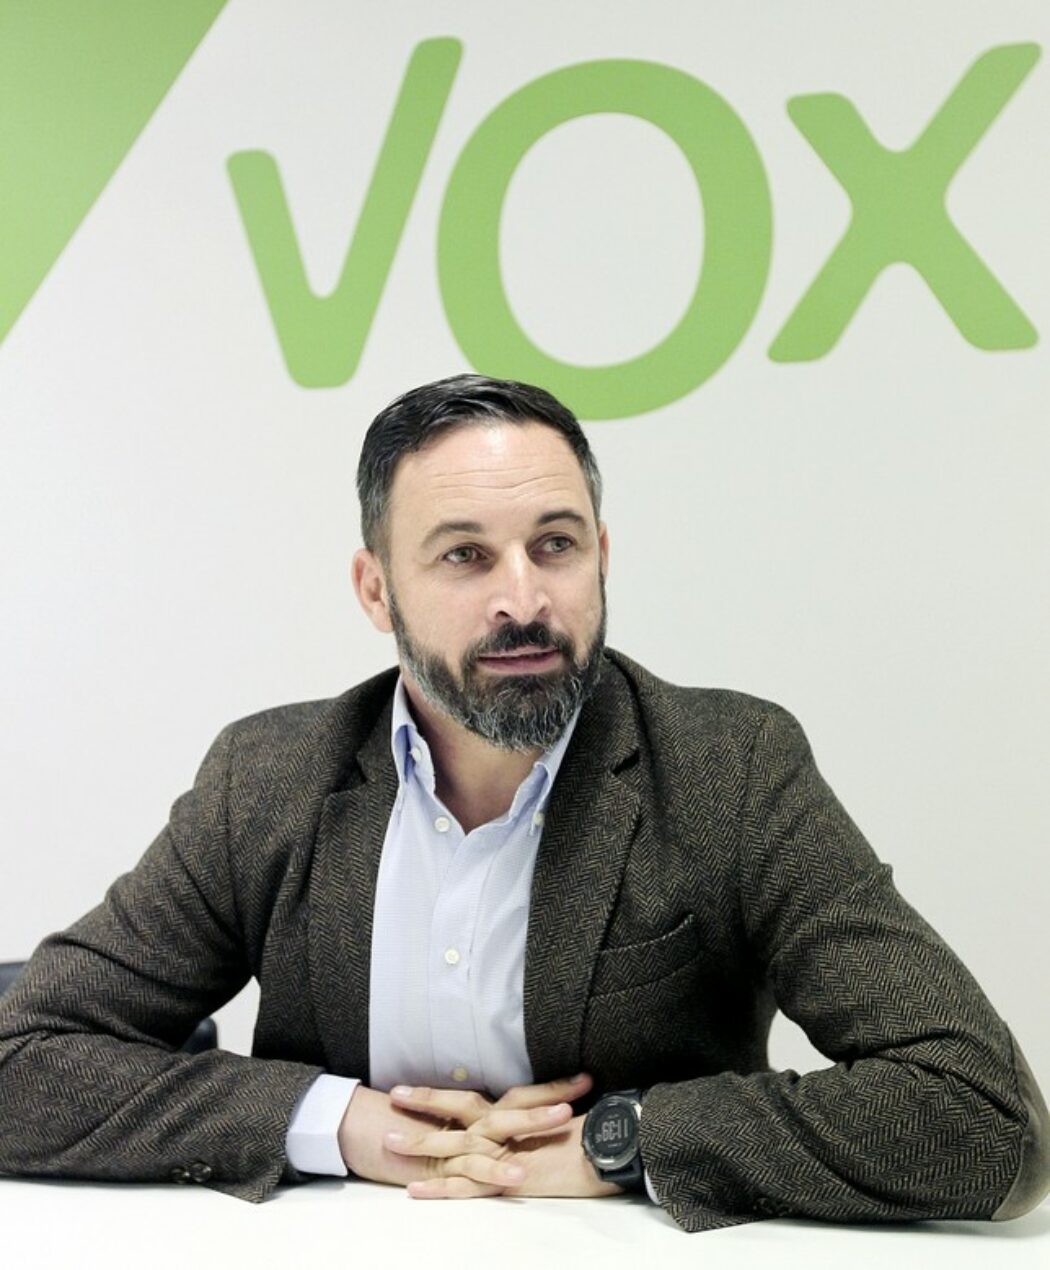 Espagne : le chef de Vox a tous les défauts, selon la gauche